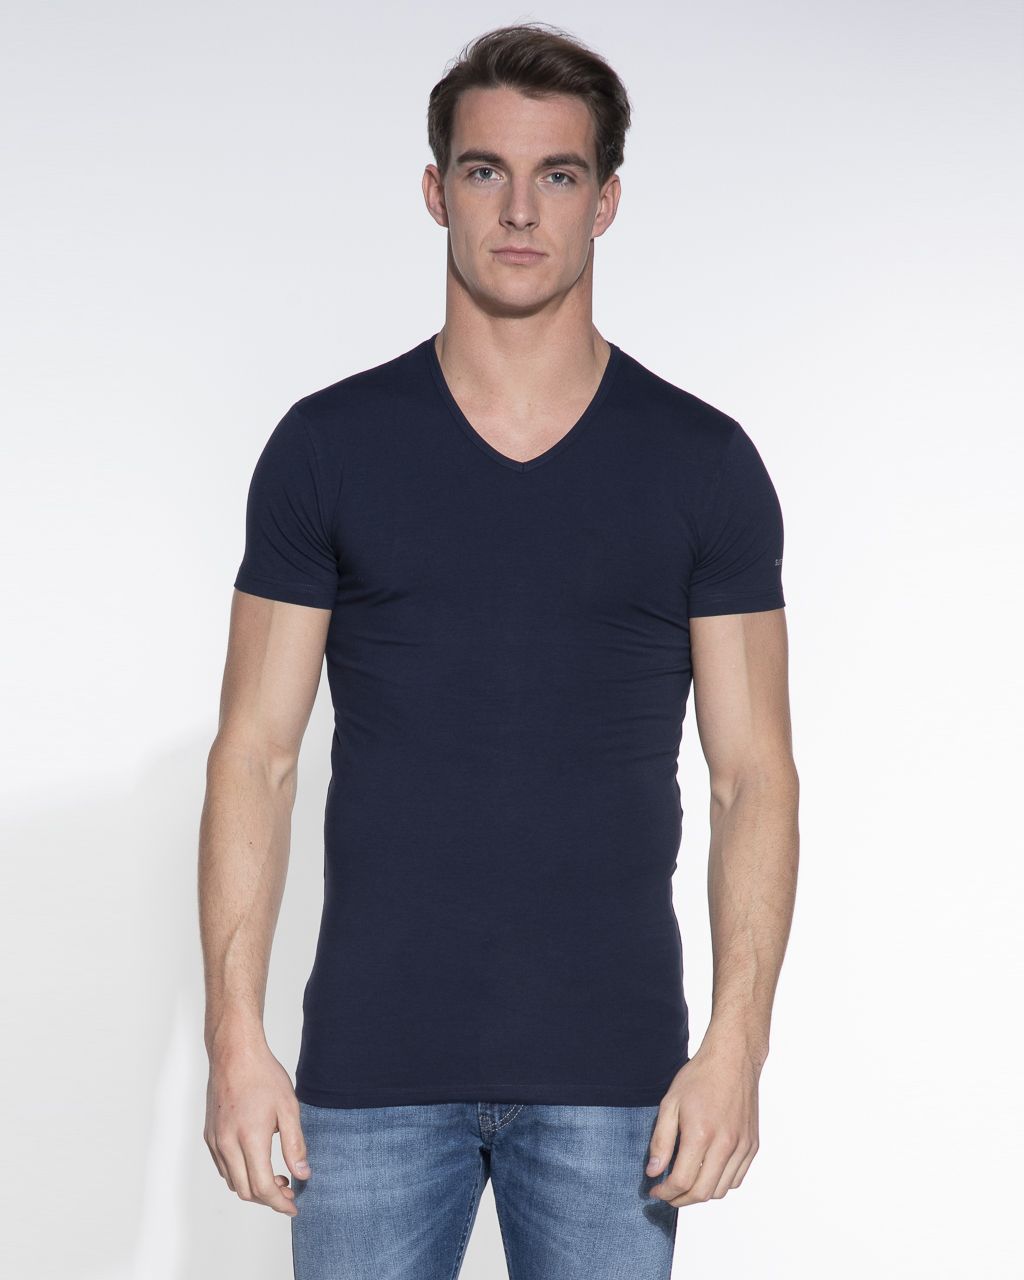 Gymnastiek Tablet Meerdere Slater Stretch T-shirt V-hals 2-pack | Shop nu - Only for Men